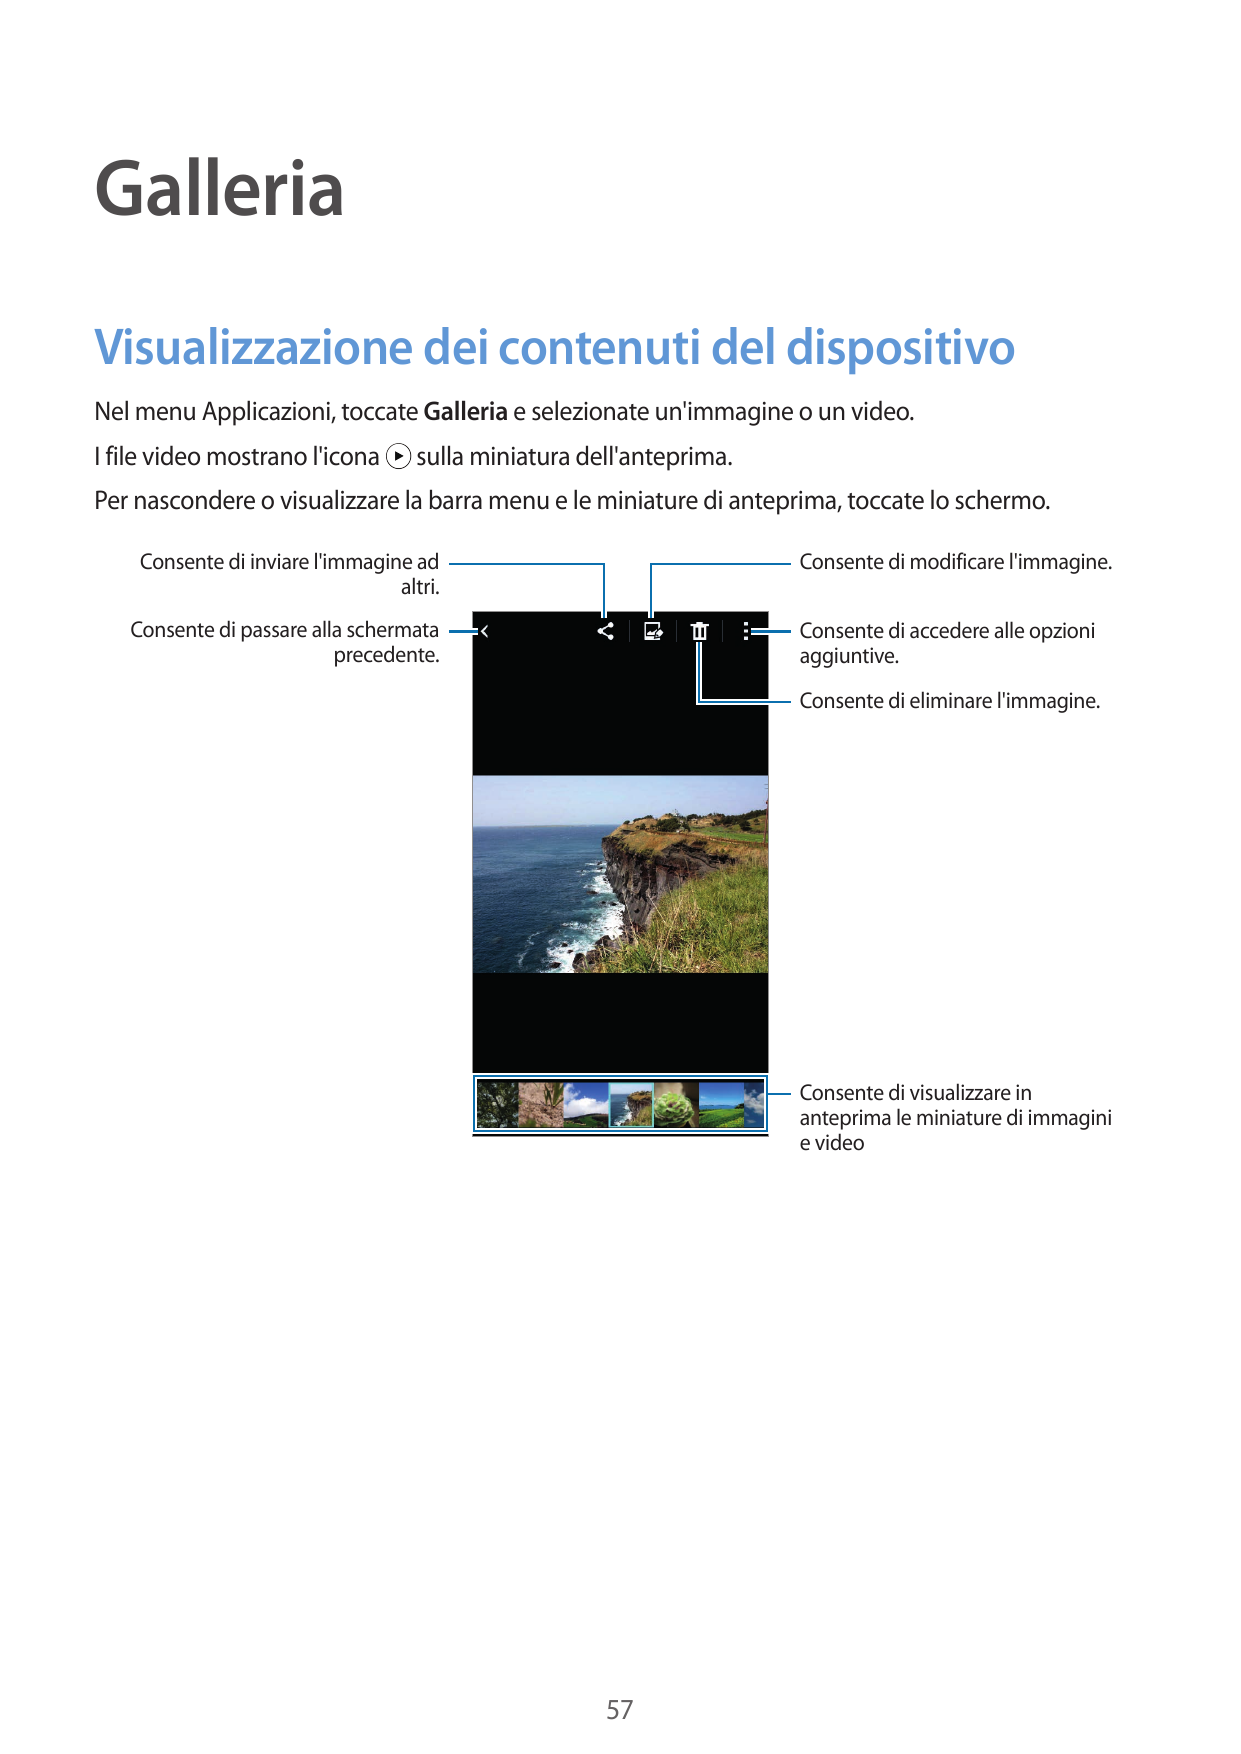 GalleriaVisualizzazione dei contenuti del dispositivoNel menu Applicazioni, toccate Galleria e selezionate un'immagine o un vide